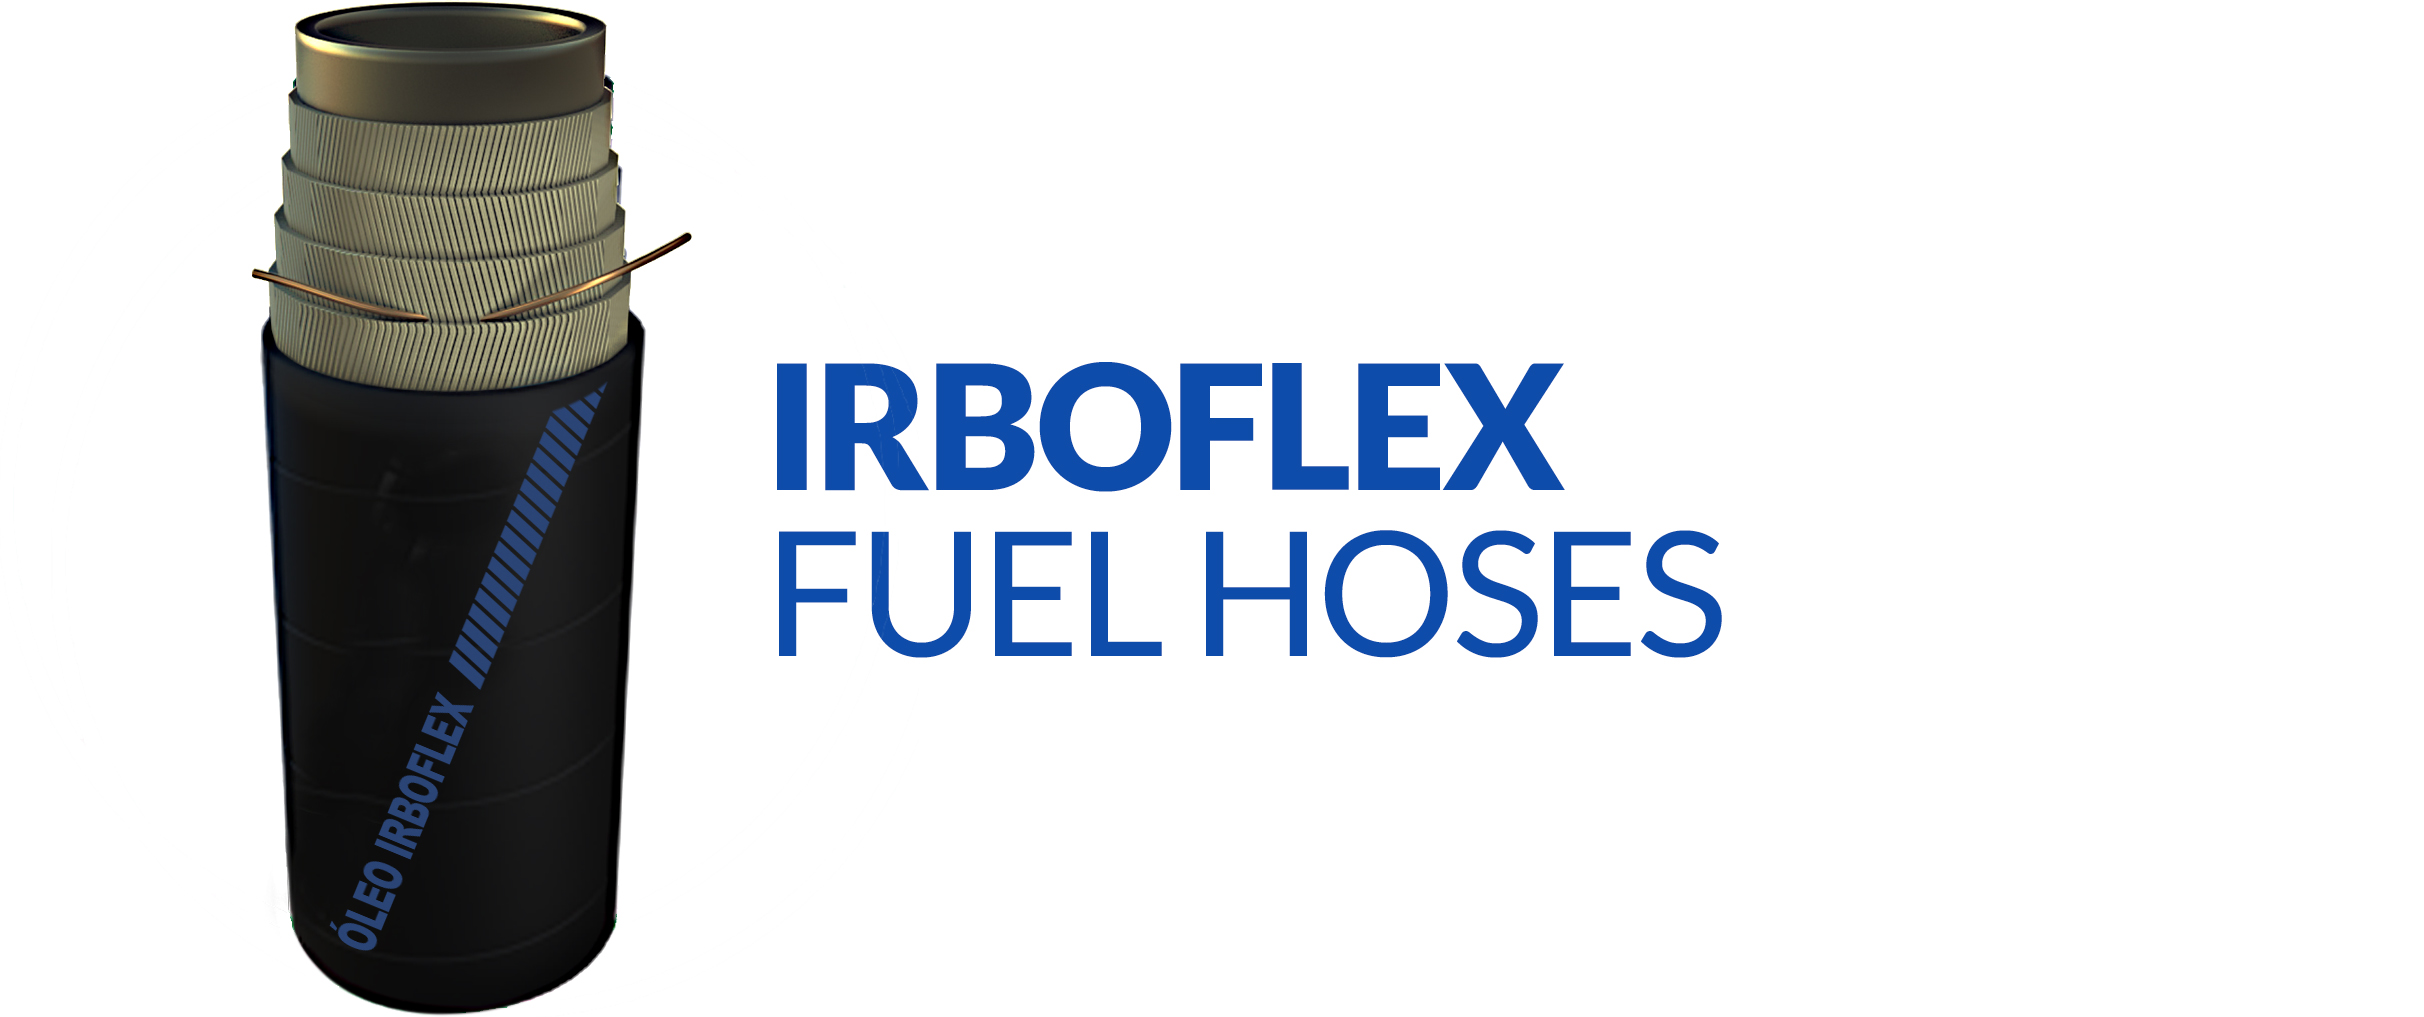 oleos-e-derivados-___-_irboflex-fuel-hoses-copia